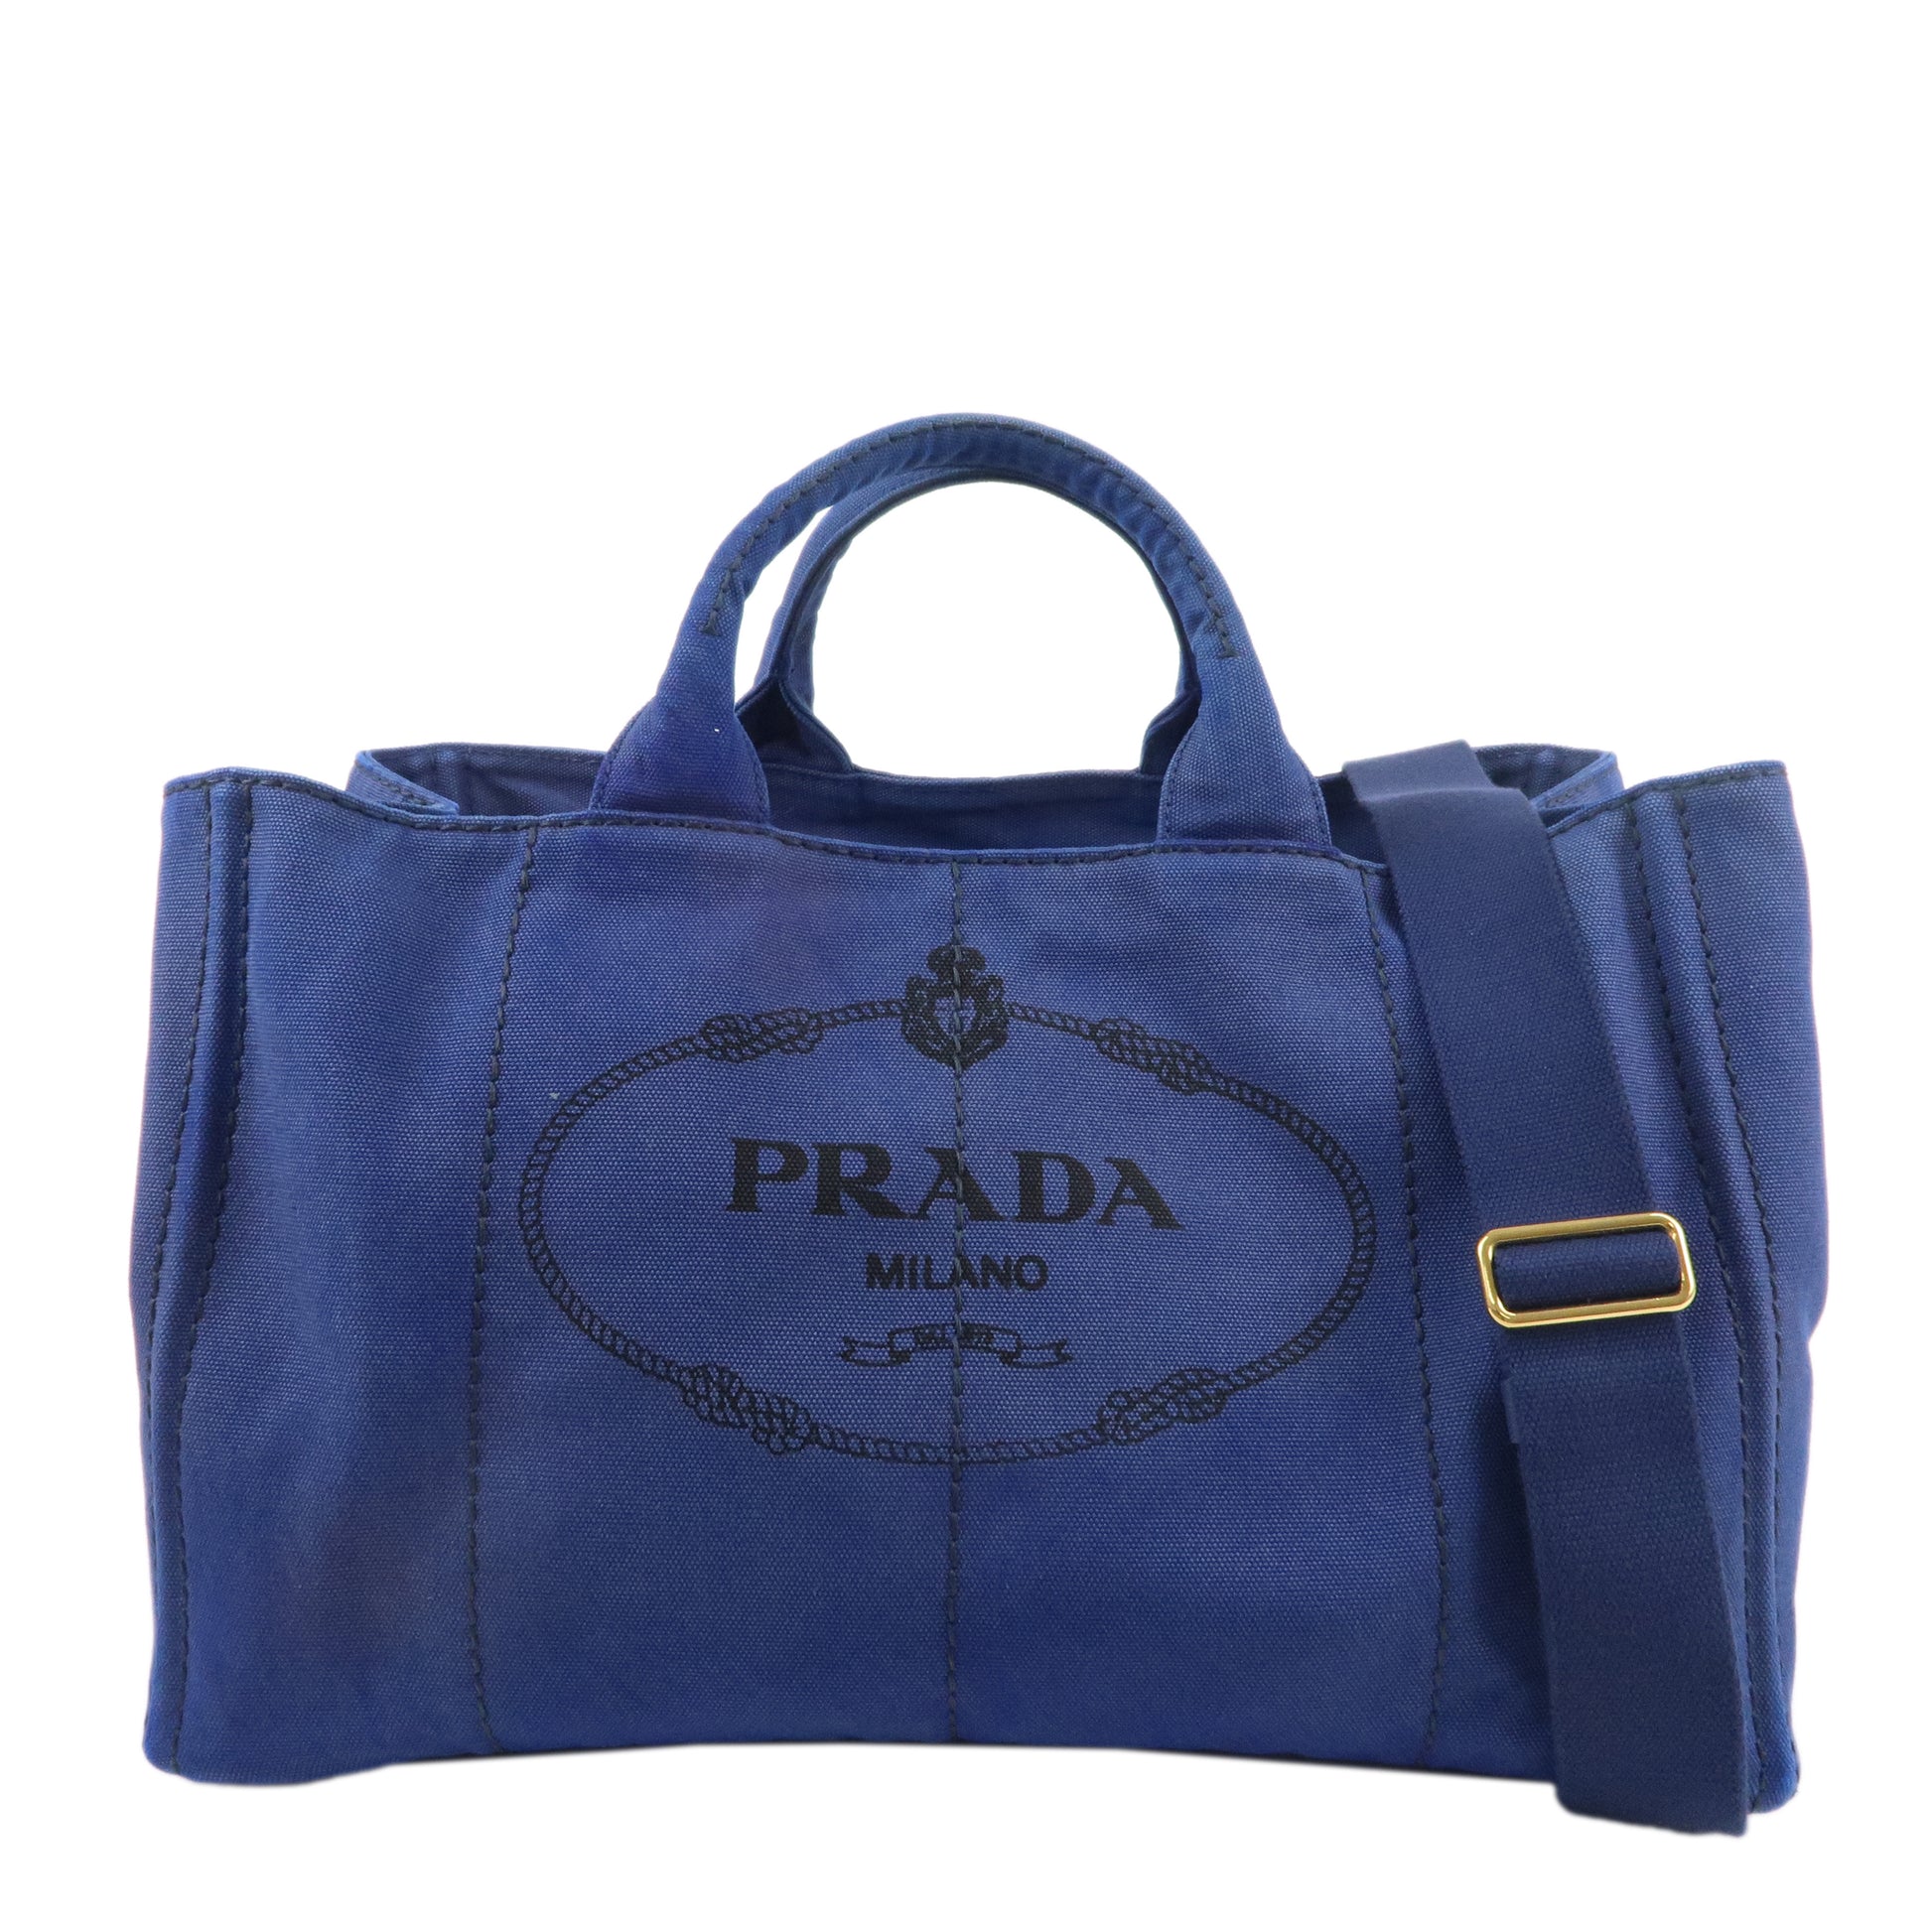 PRADA-Logo-Canapa-Large-Canvas-2Way-Tote-Bag-Hand-Bag-Blue-B1872G